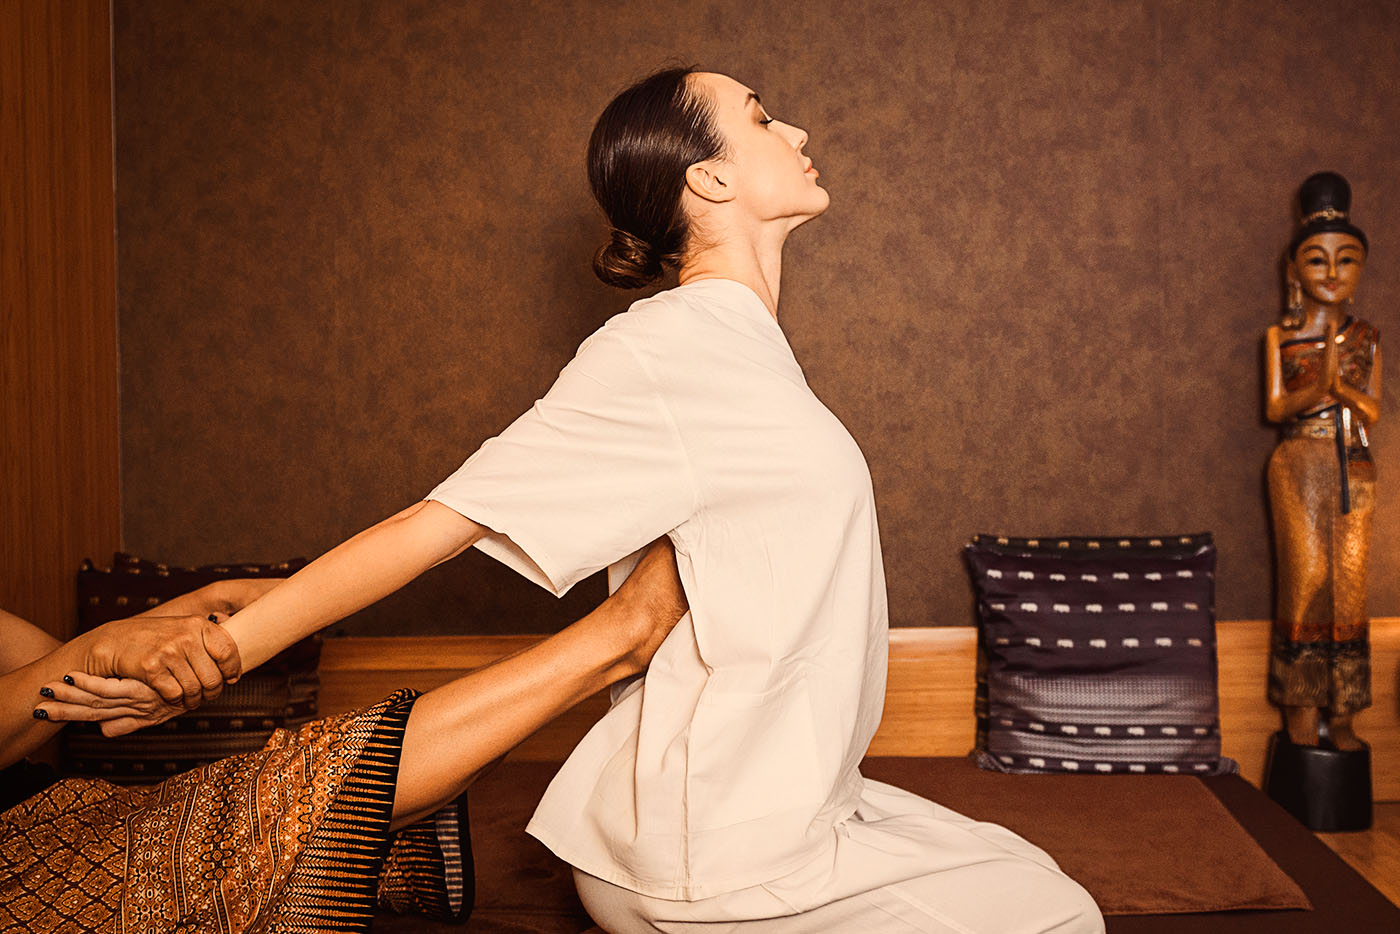 Wien body massage Massage Therapy